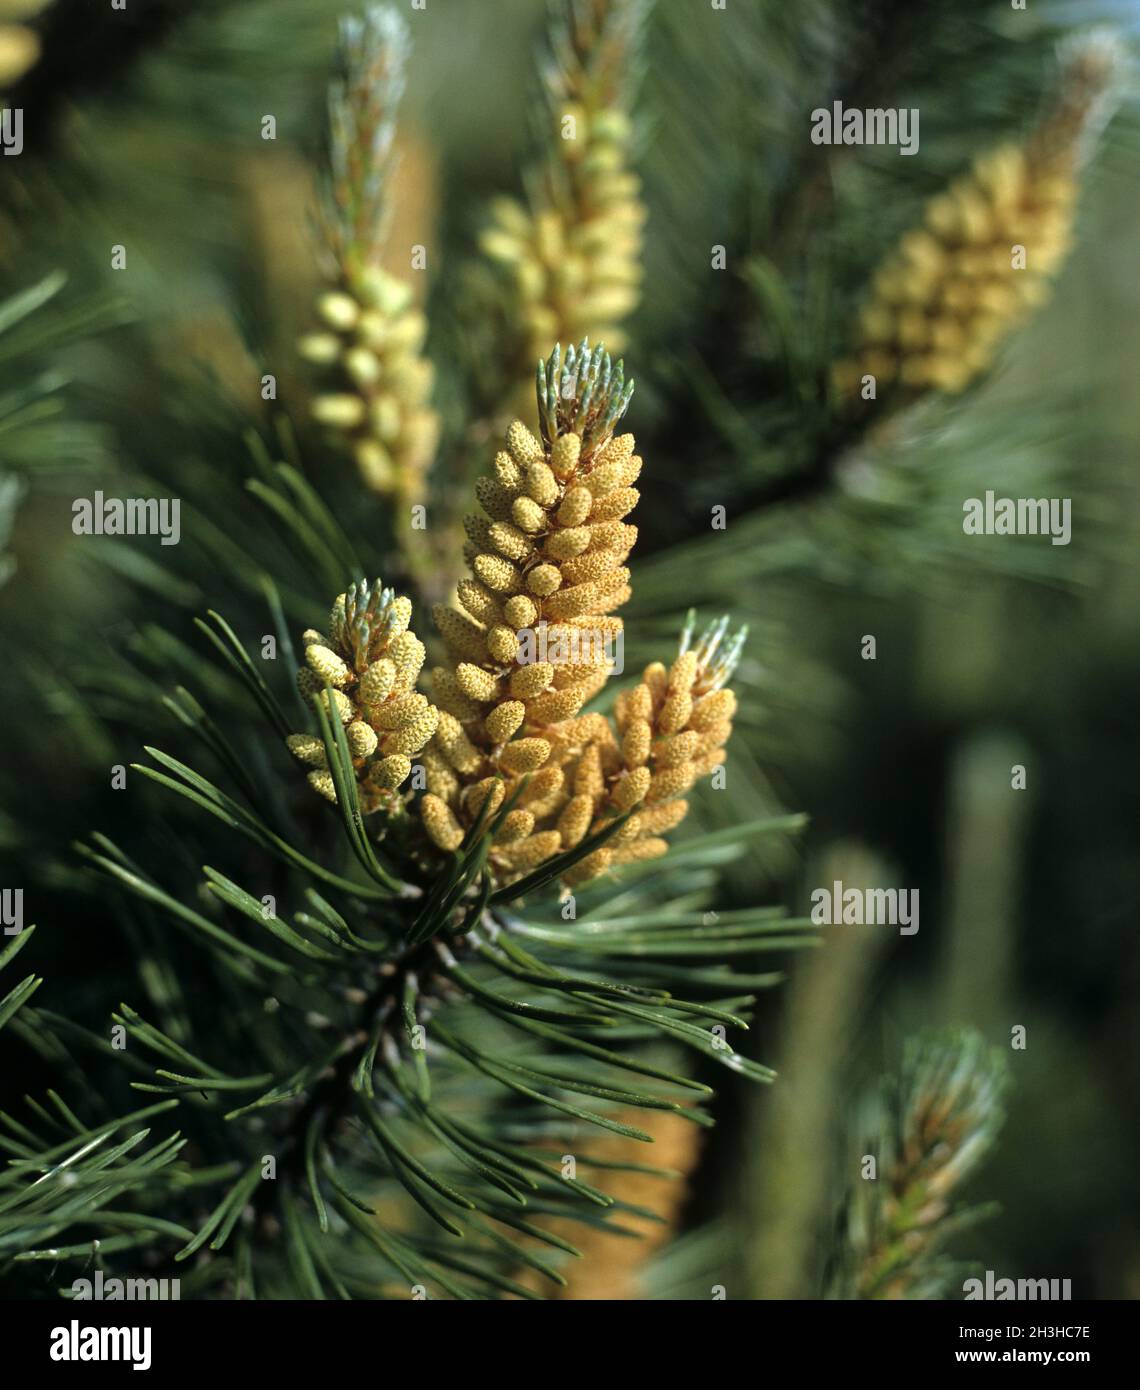 Mountain pine, pine, Pinus mugo Stock Photo